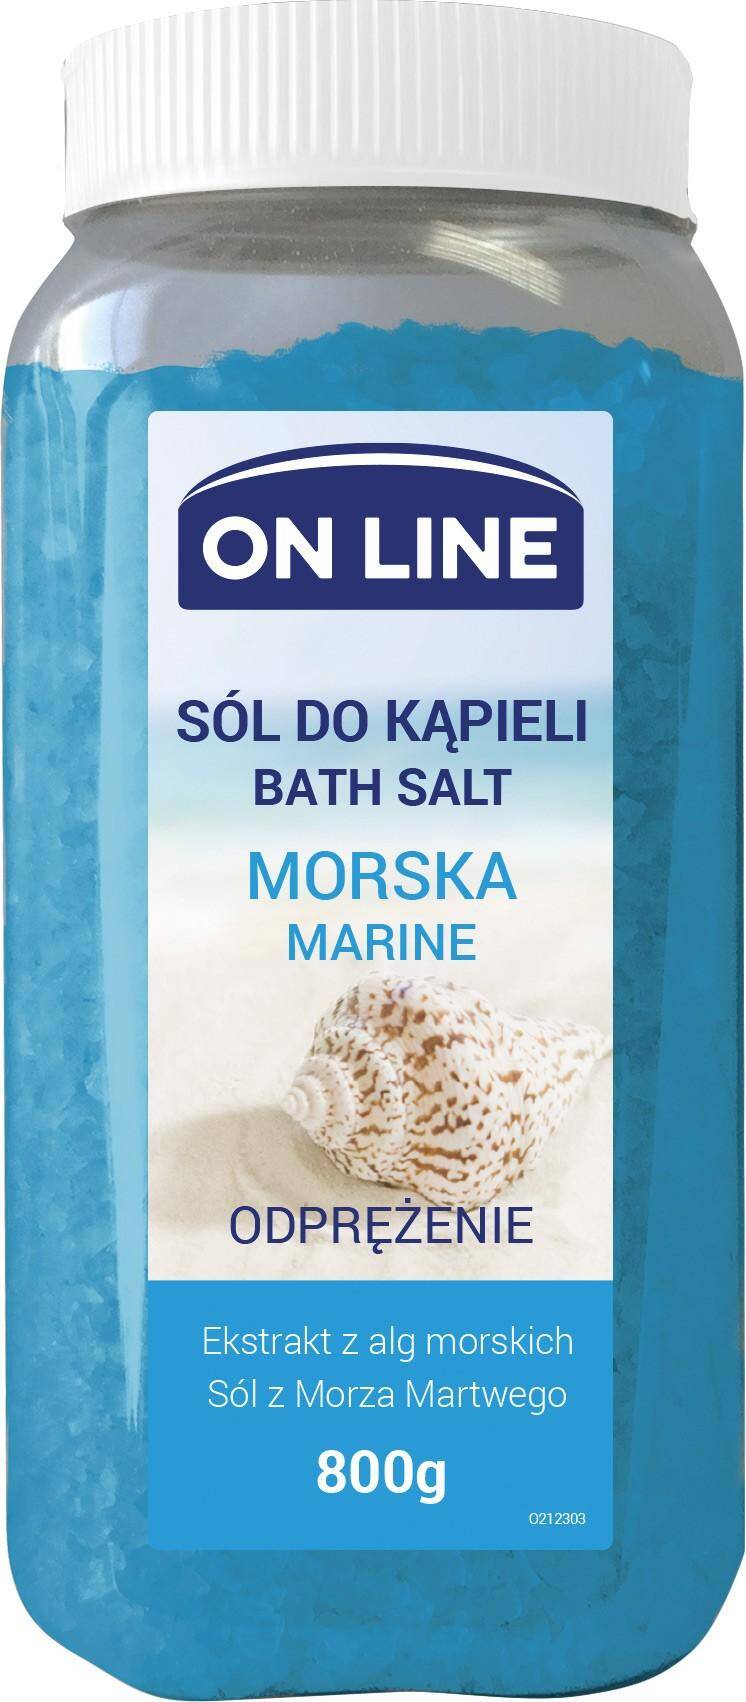 On Line sól do kąpieli Morska 800g